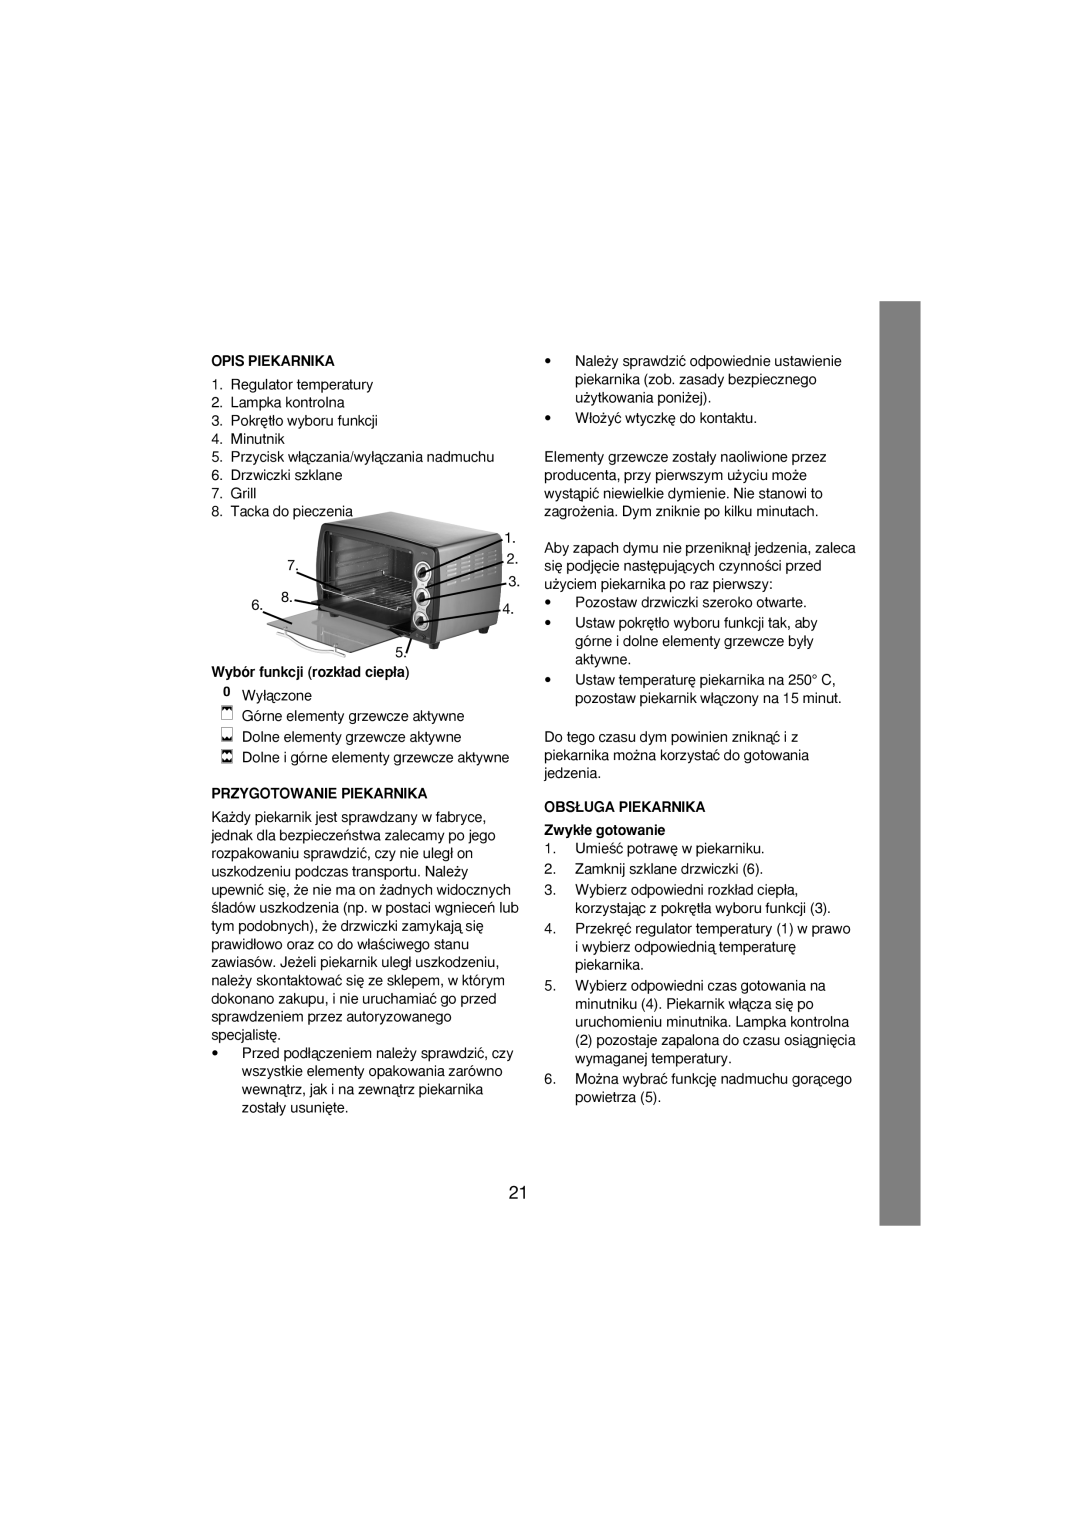 Melissa 251-003 manual Opis Piekarnika, Wybór funkcji rozk∏ad ciep∏a, Przygotowanie Piekarnika 